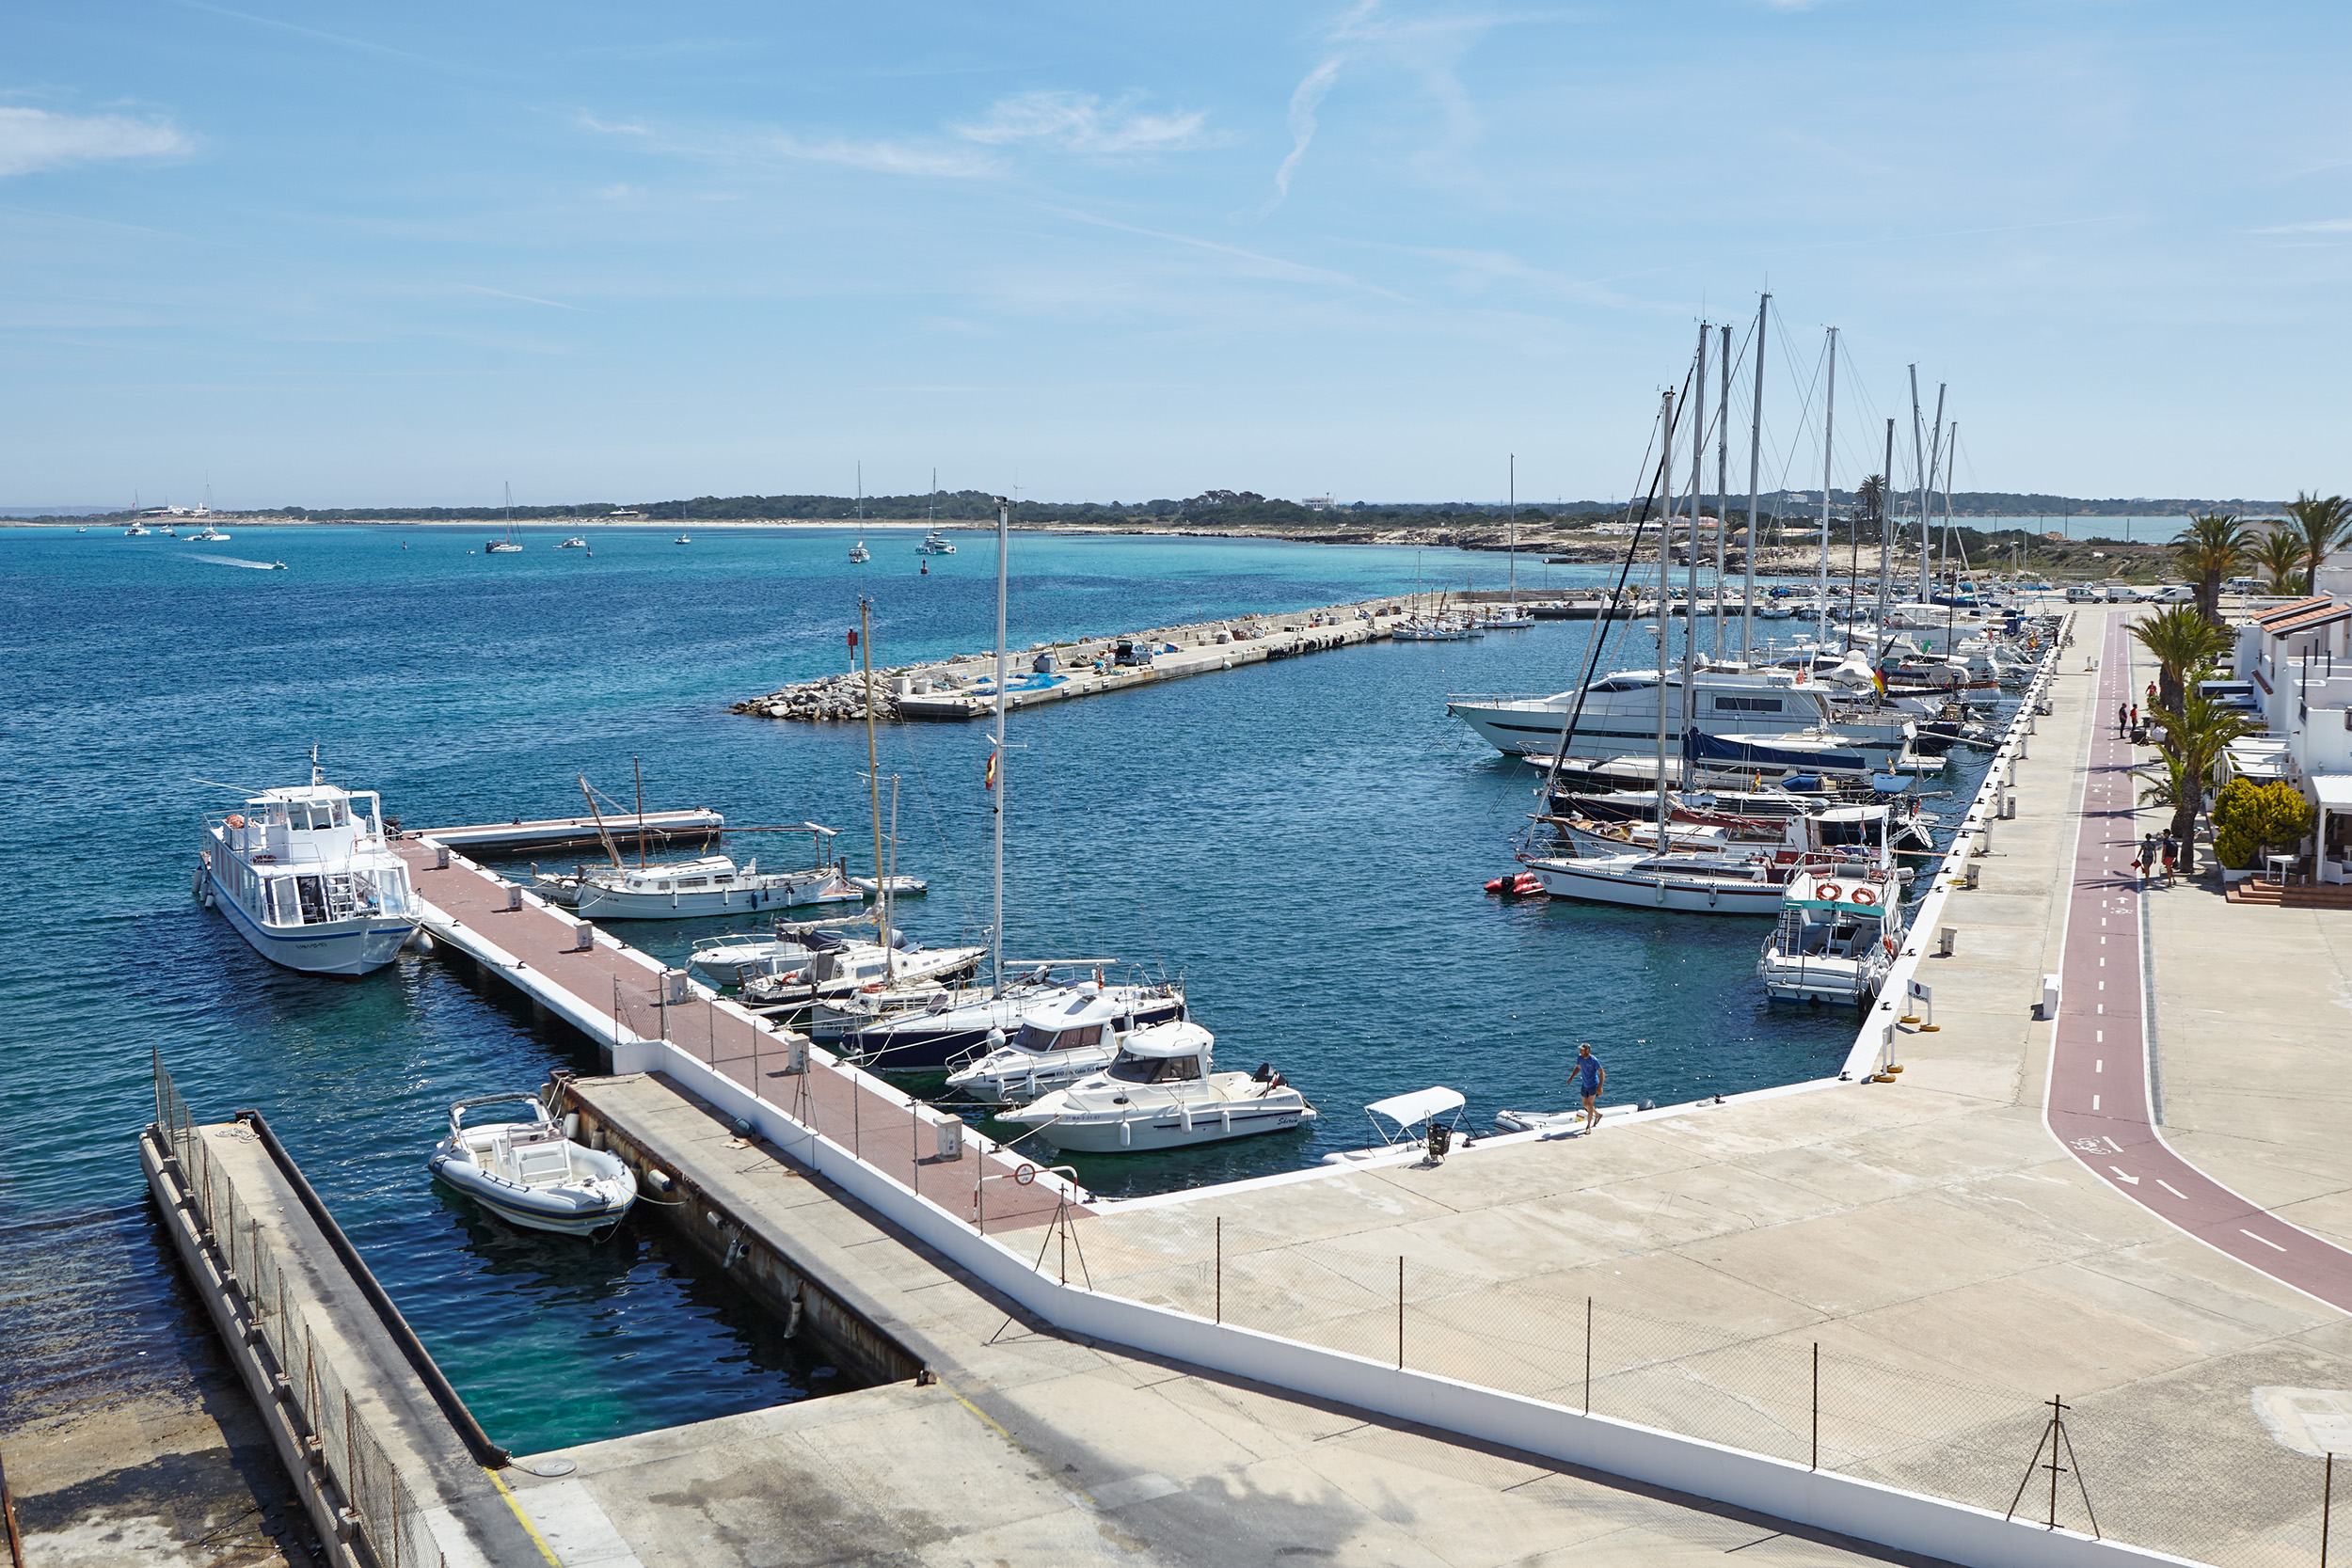 Die APB lehnt die Fristerweiterung und Verlängerung für Formentera Mar ab